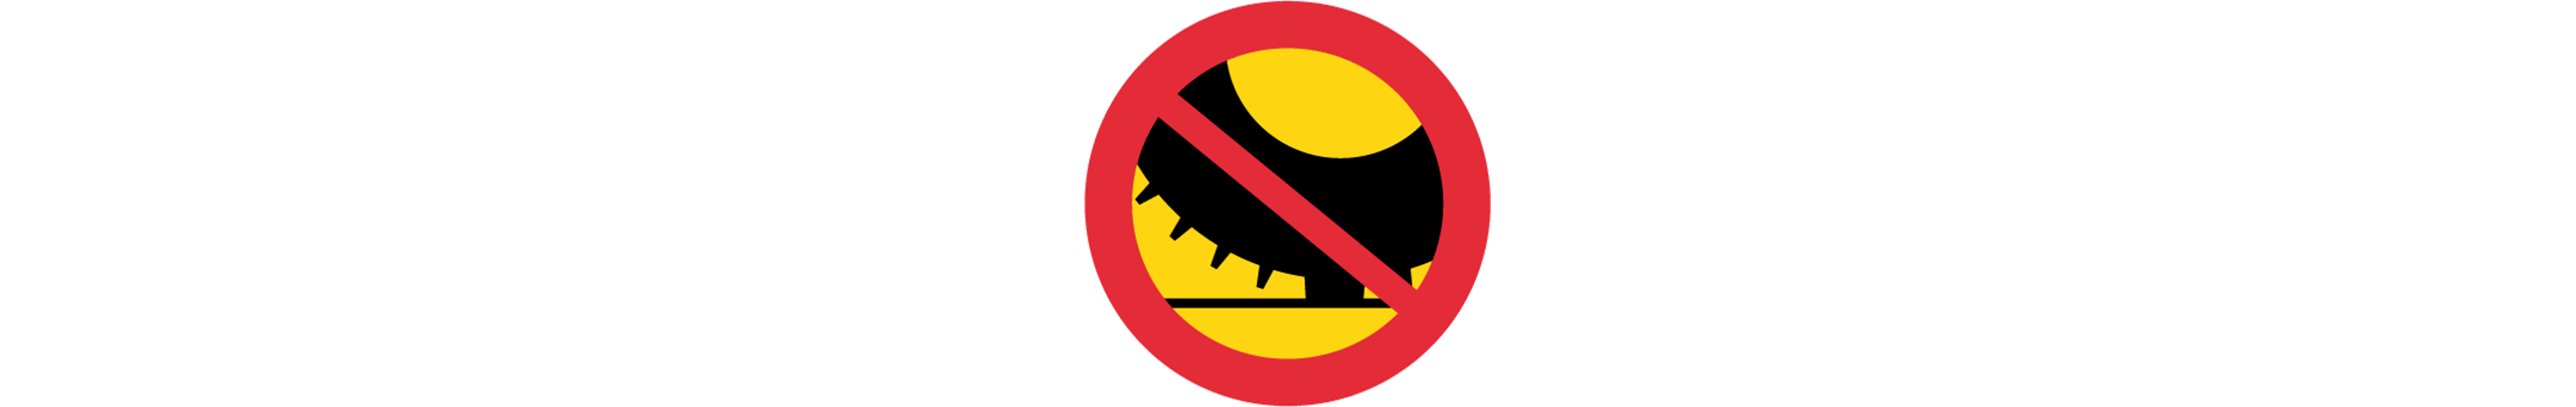 vägmärke för dubbdäcksförbud